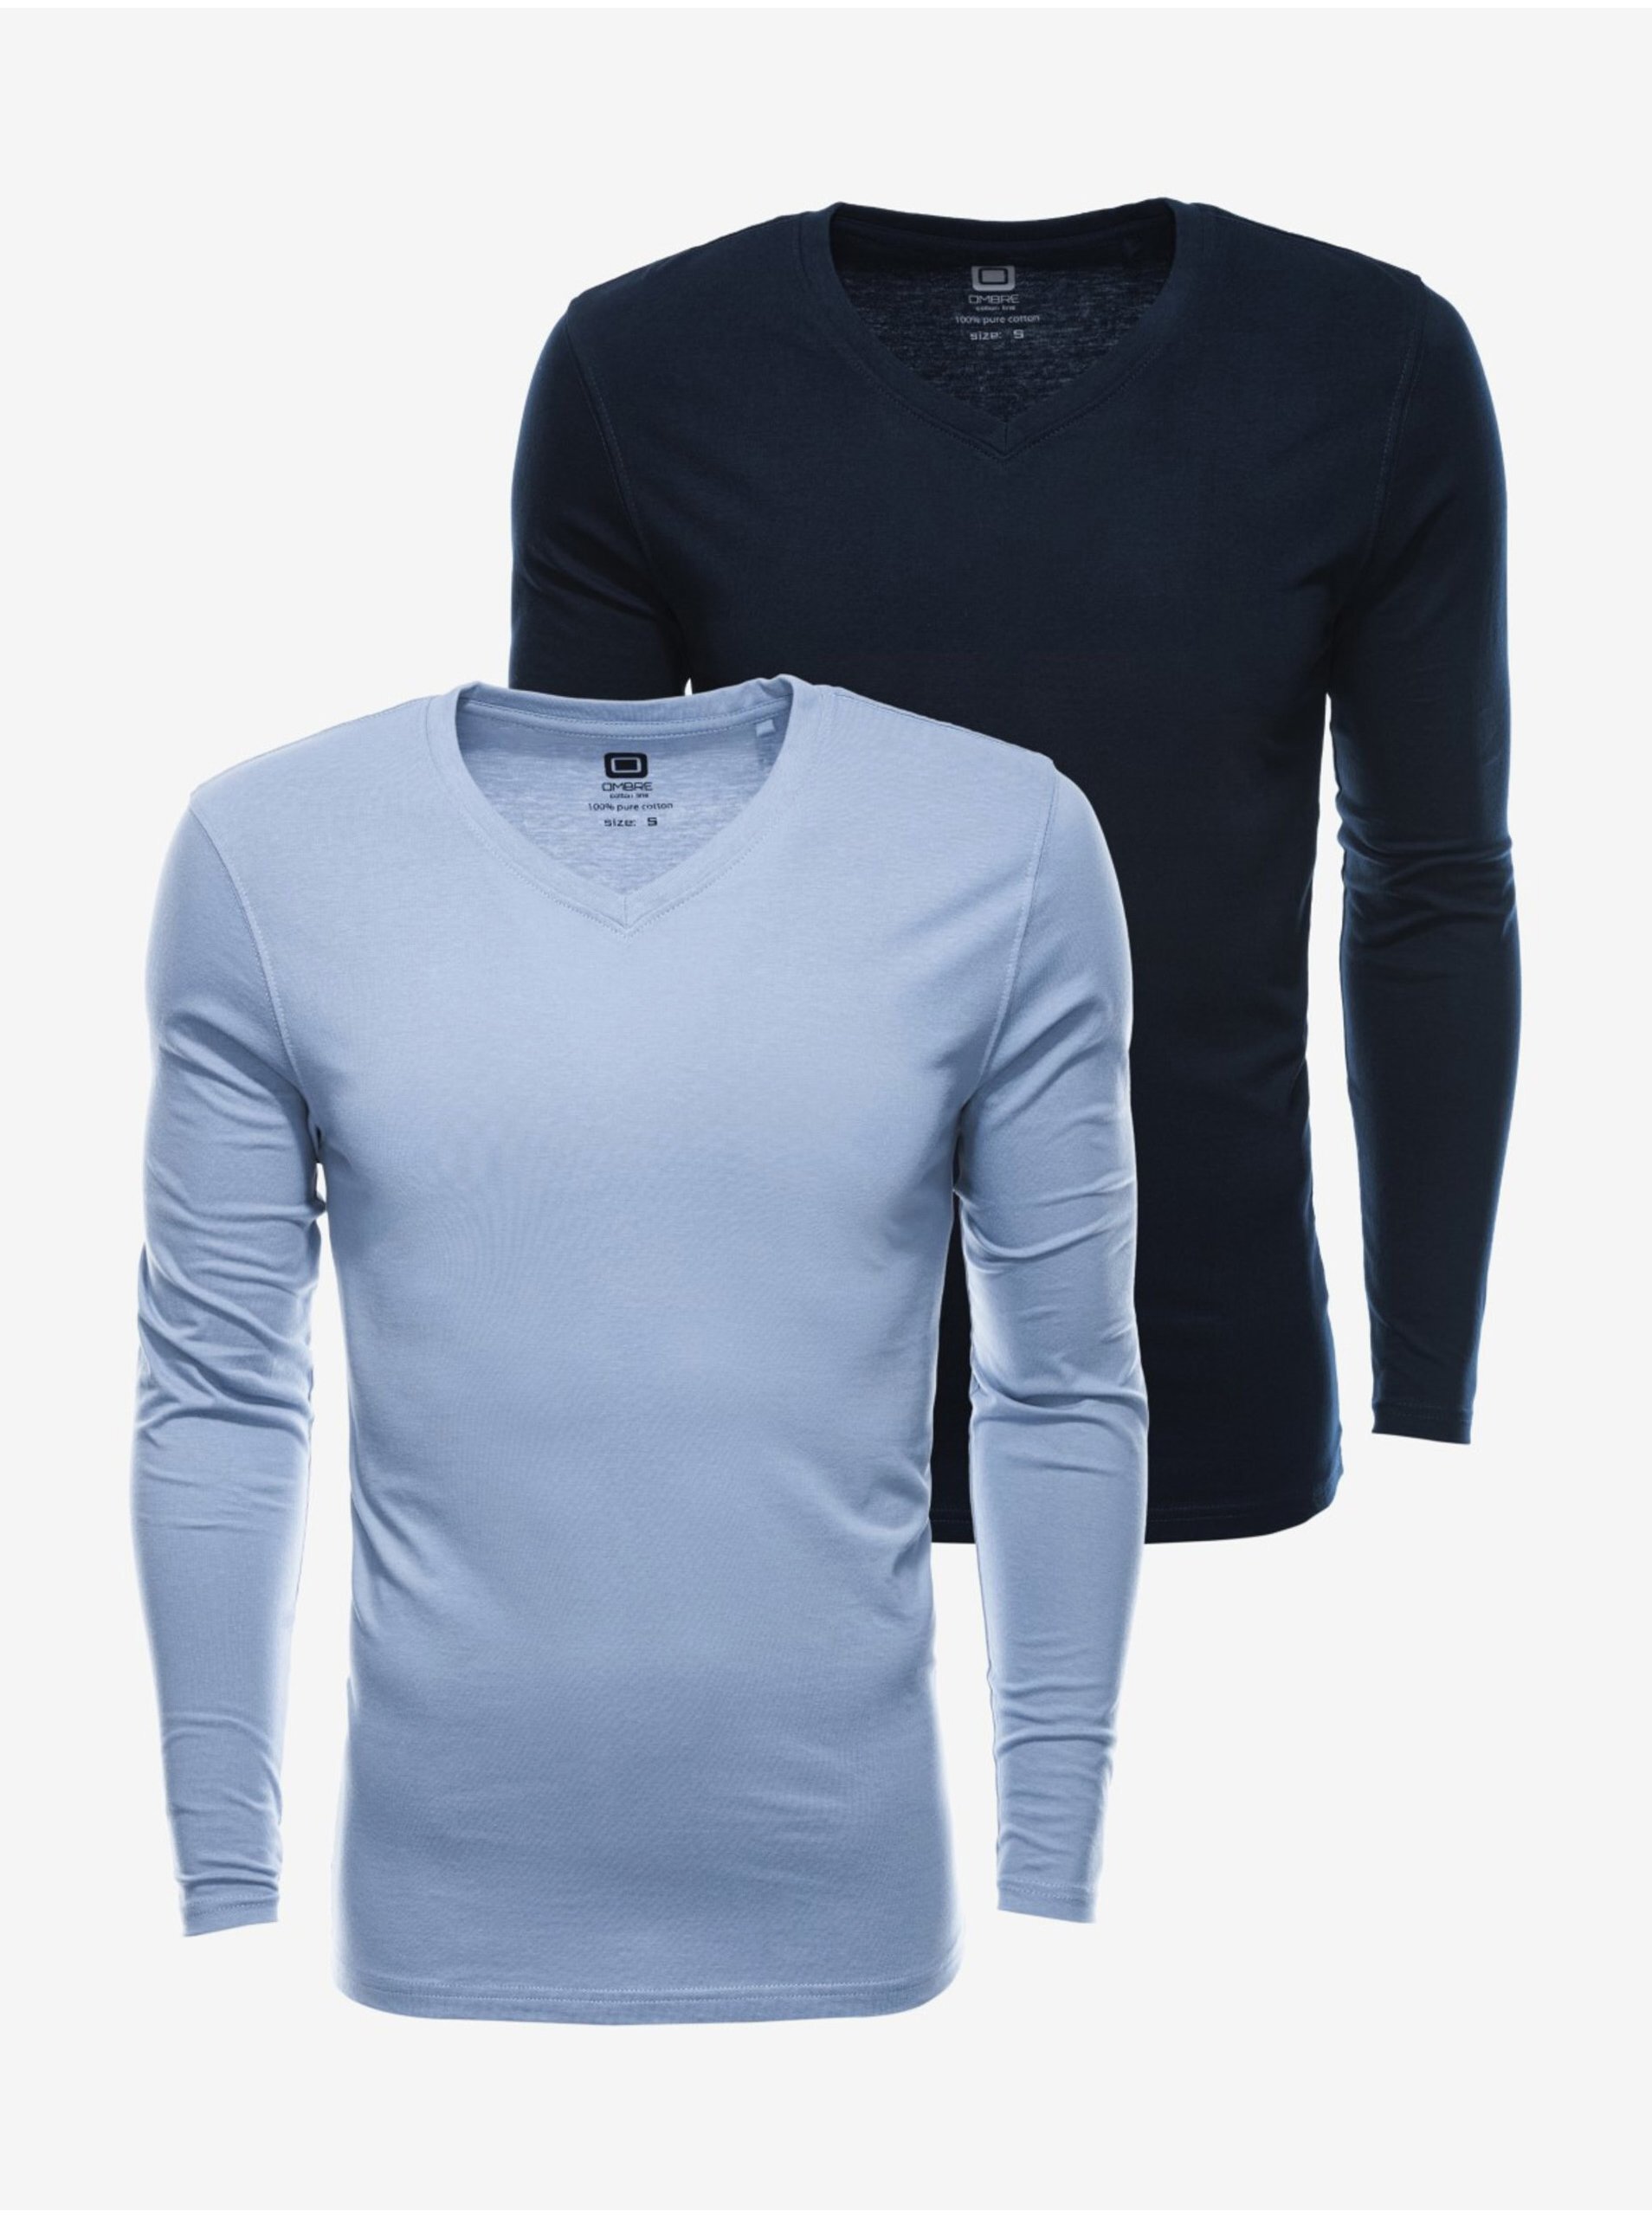 Levně Sada dvou pánských basic triček v světle modré a tmavé modré barvě Ombre Clothing